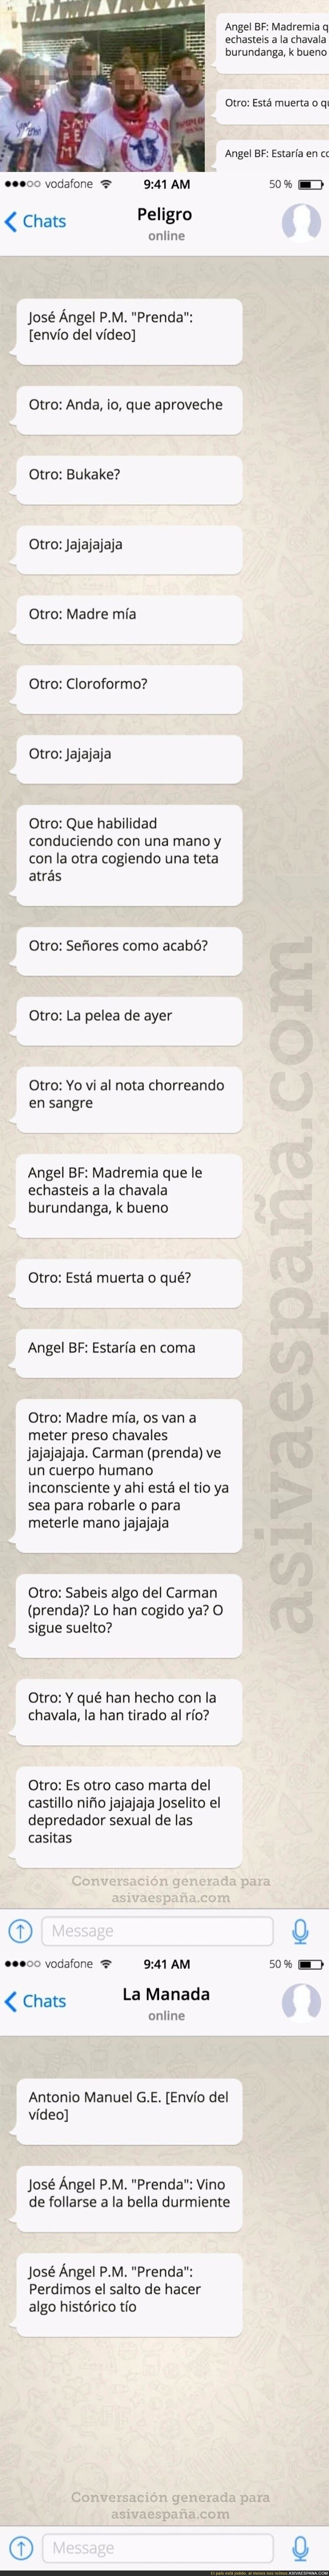 Los whatsapps del grupo de El Prenda tras cometer otro abuso en Córdoba